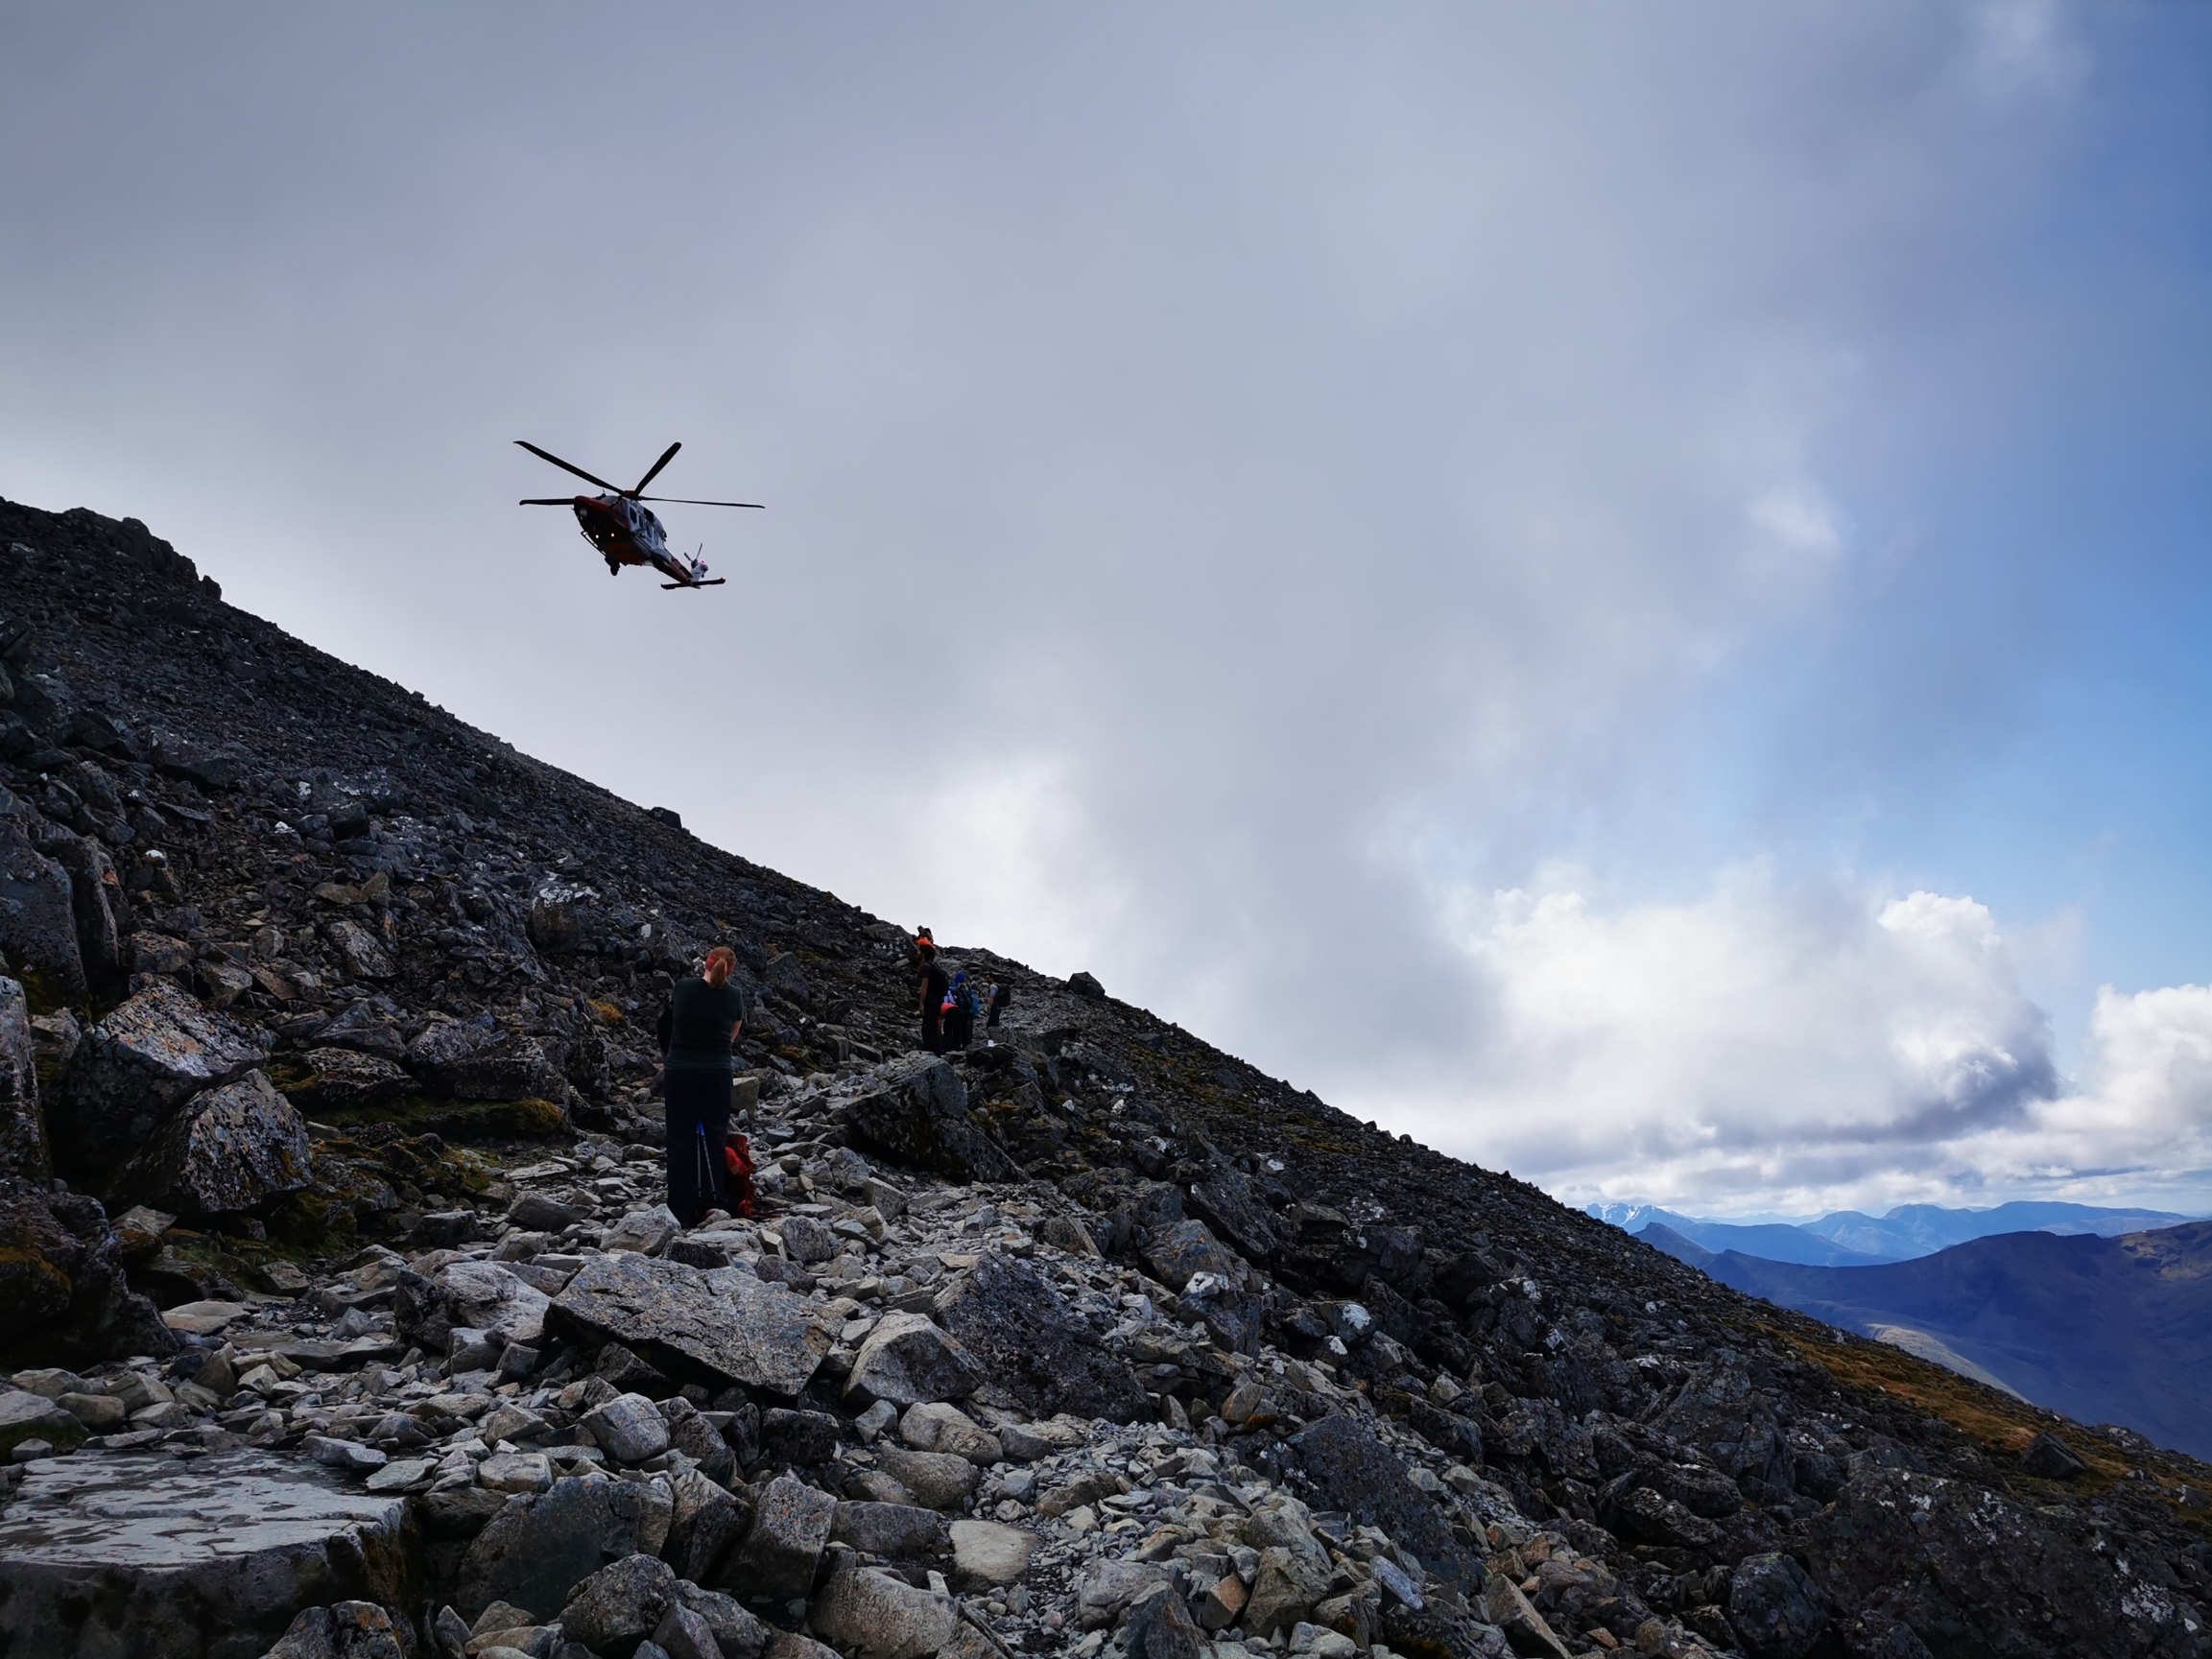 Ben Nevis: Helikopter Evakuierung